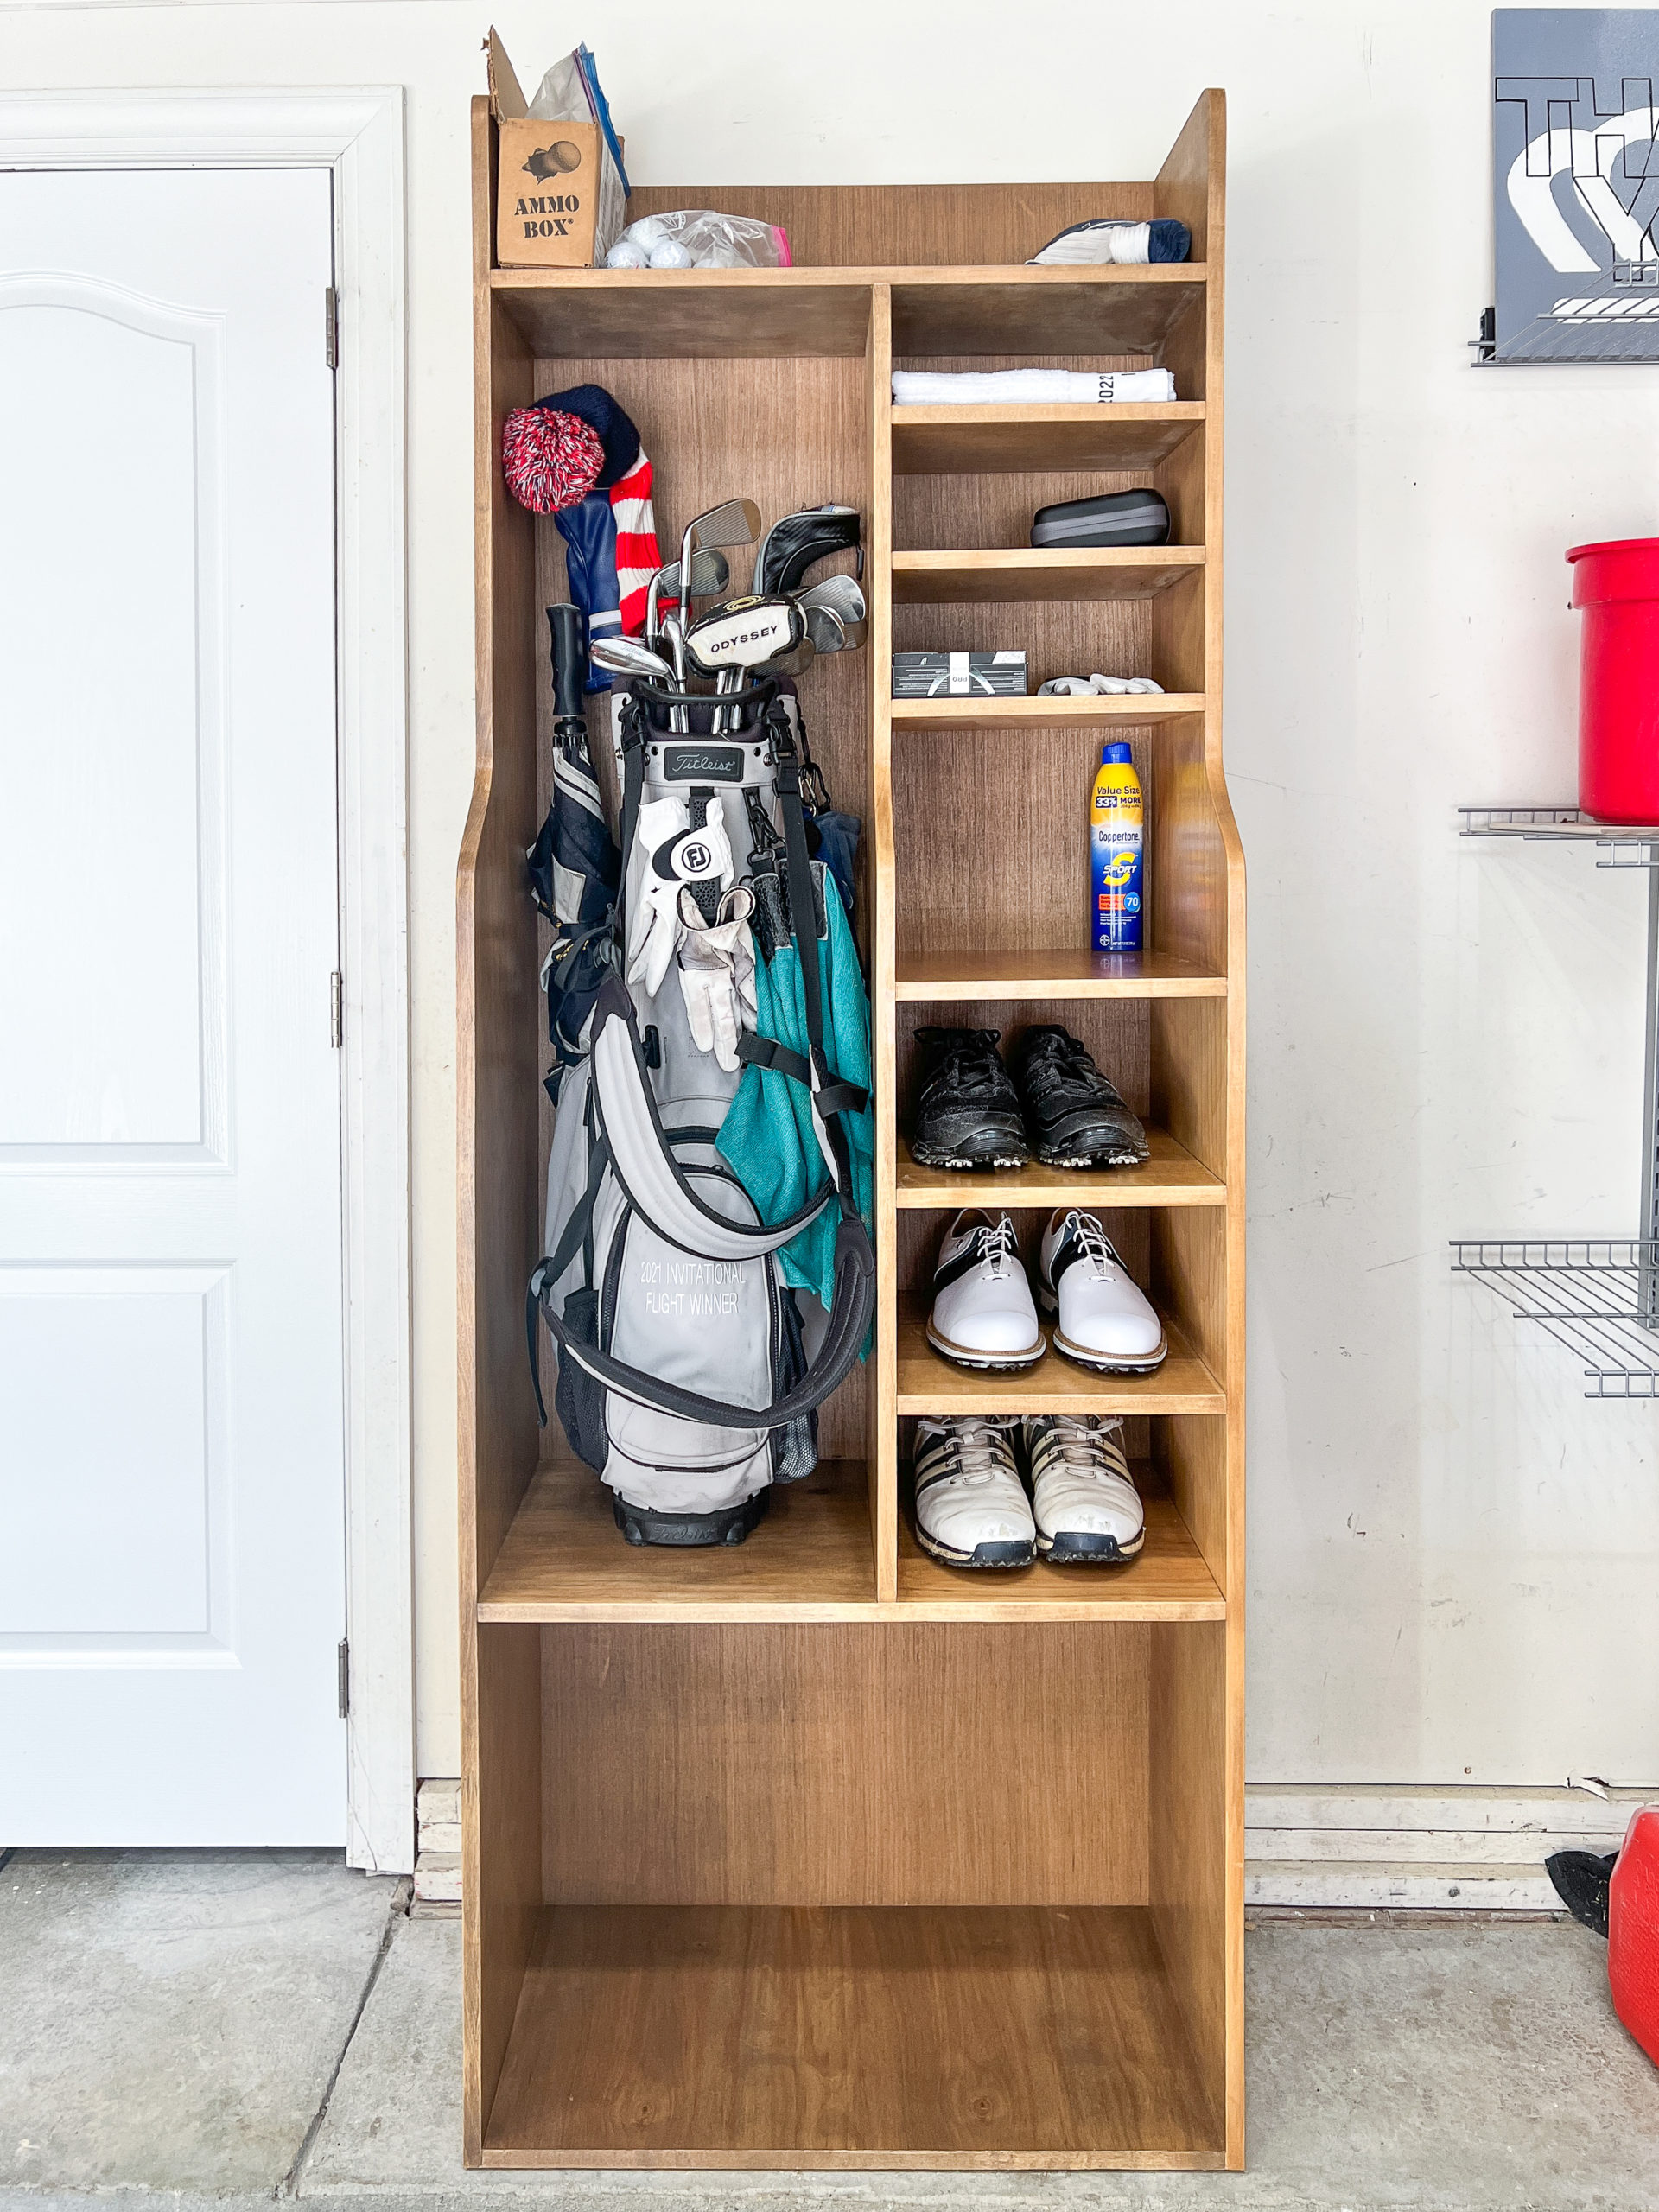 DIY Golf Bag Storage System. Dual storage for clubs plus